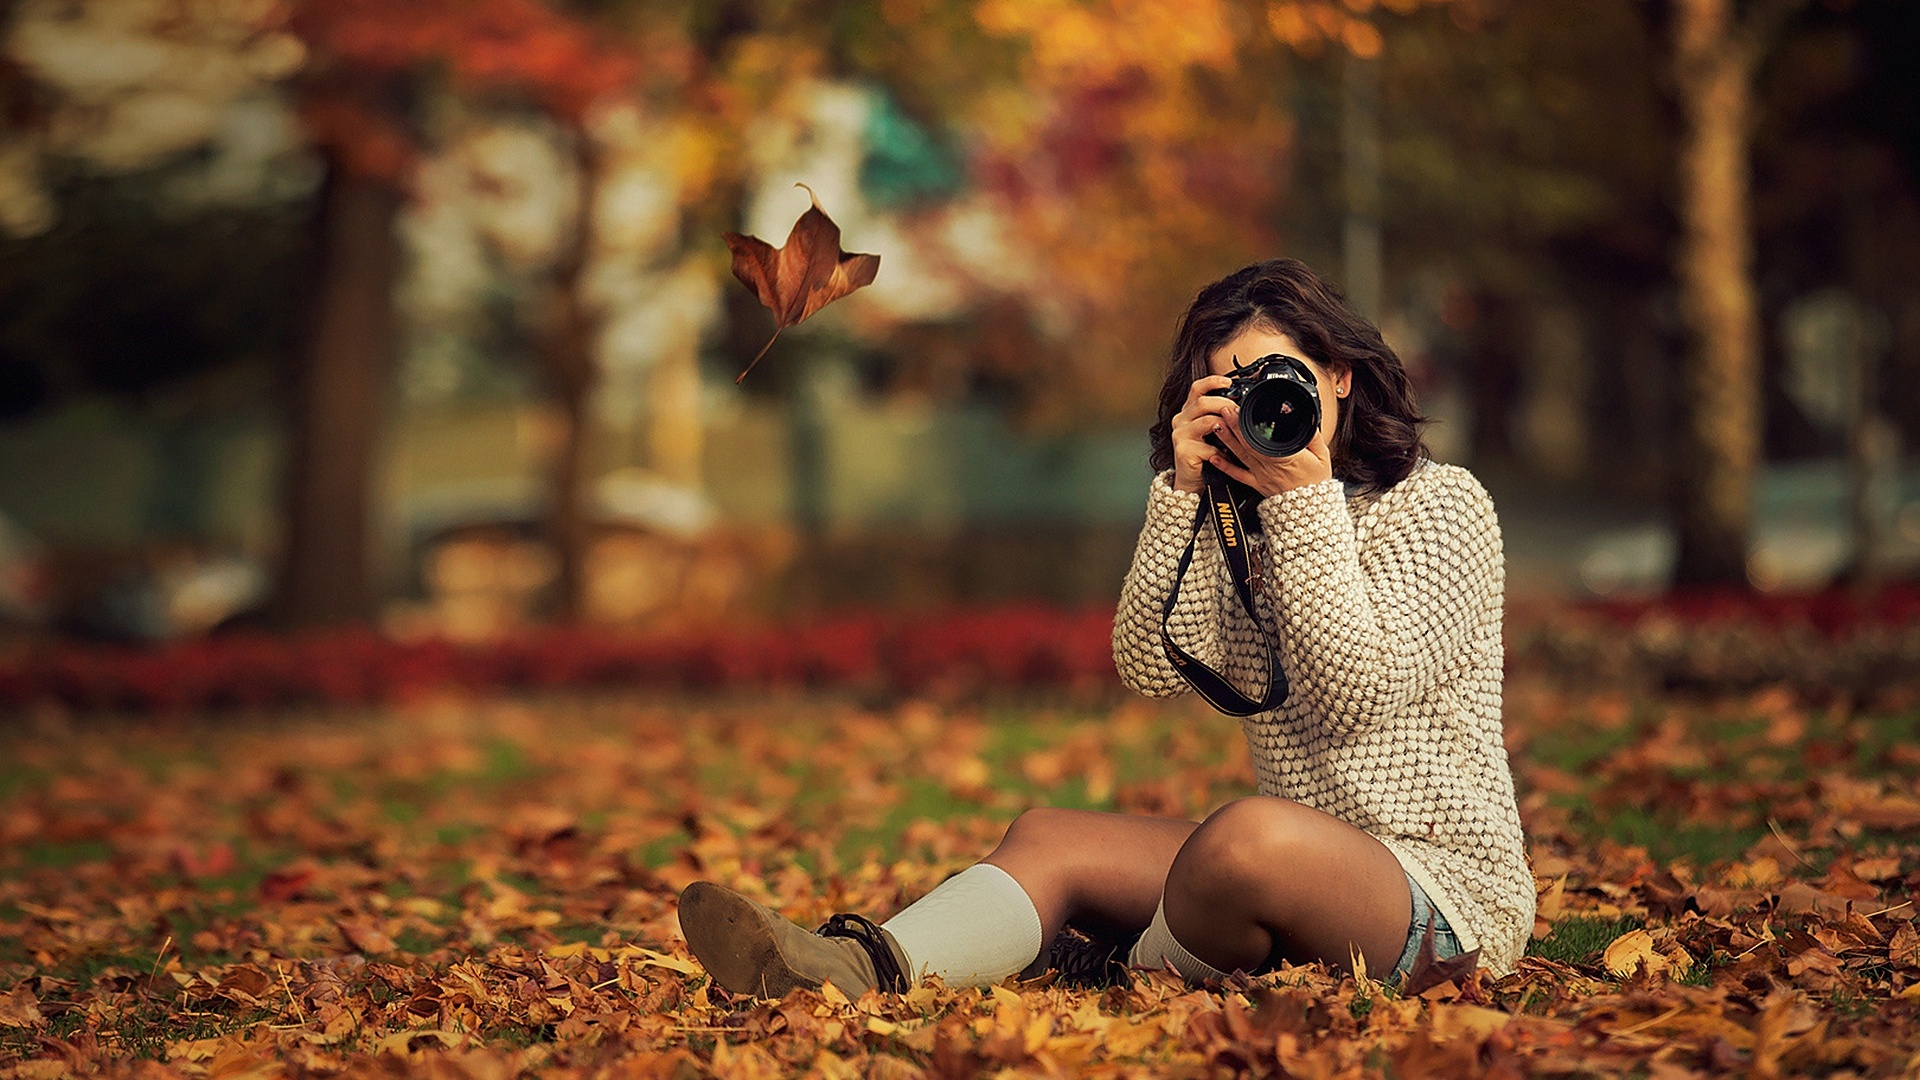 黄色的秋天 树叶 树木 公园 坐在地上的女孩  拍照 桌面壁纸